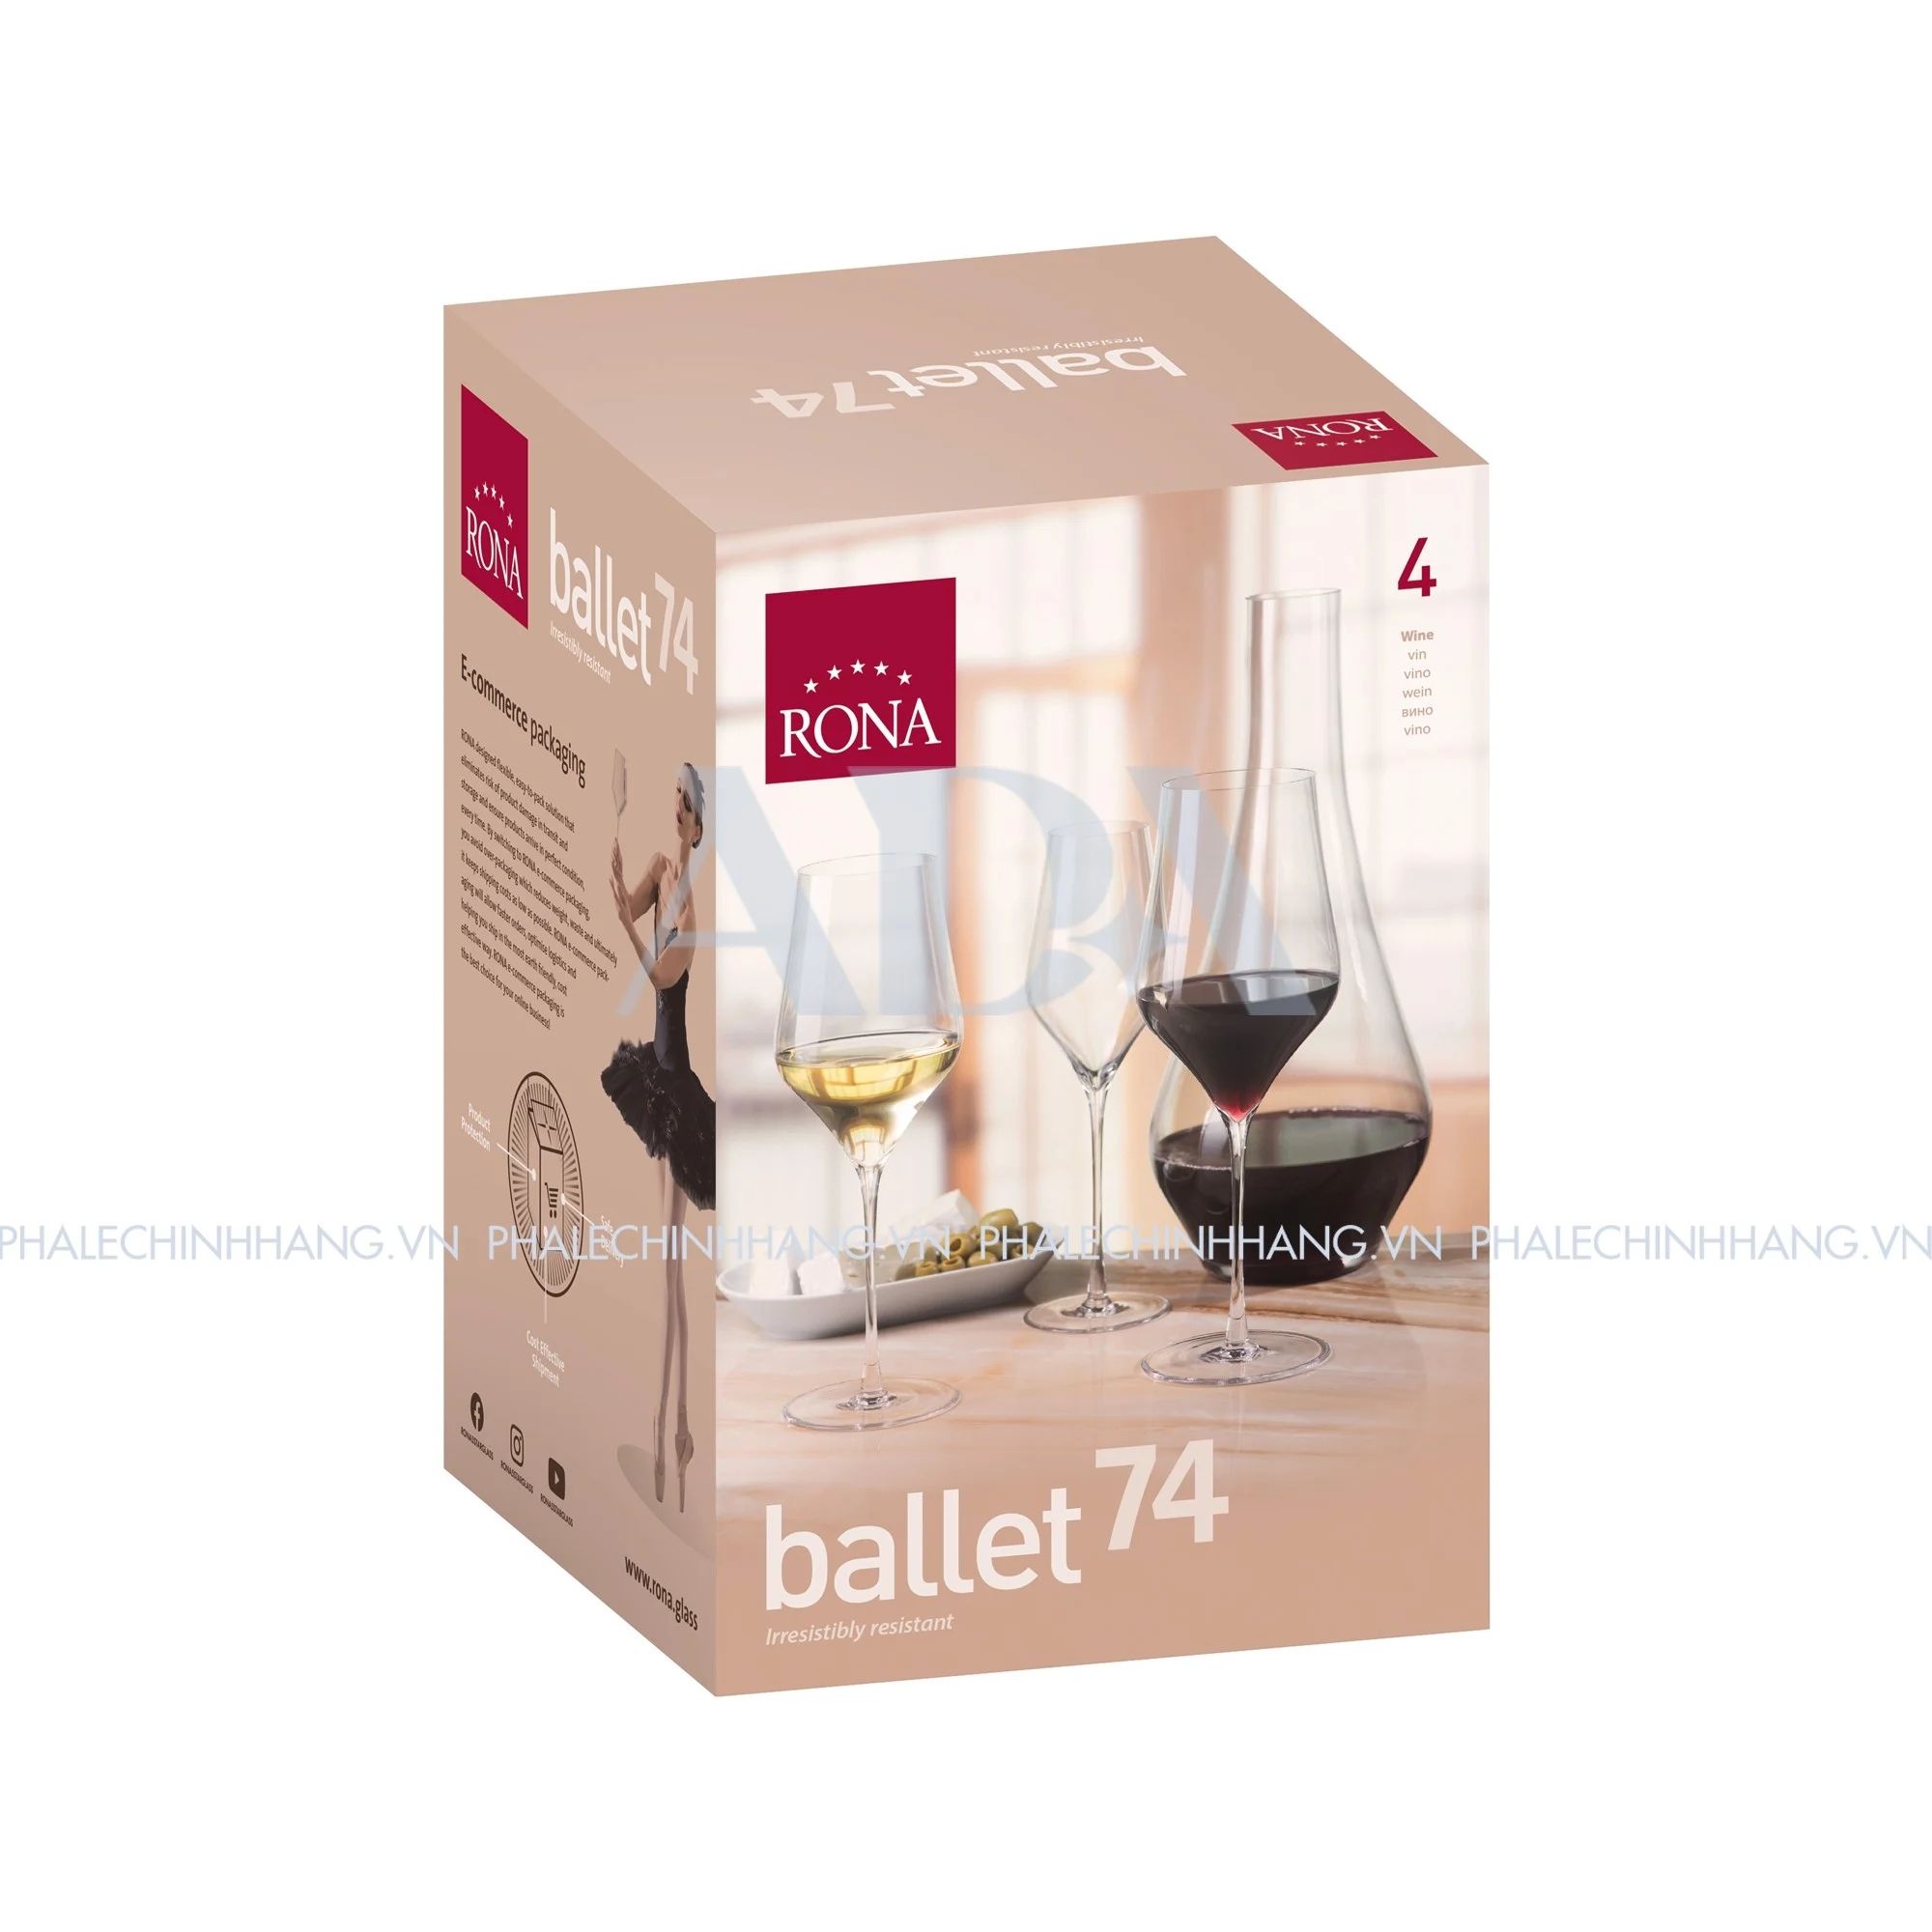  Bình lắc rượu Ballet Rona 2280ml 